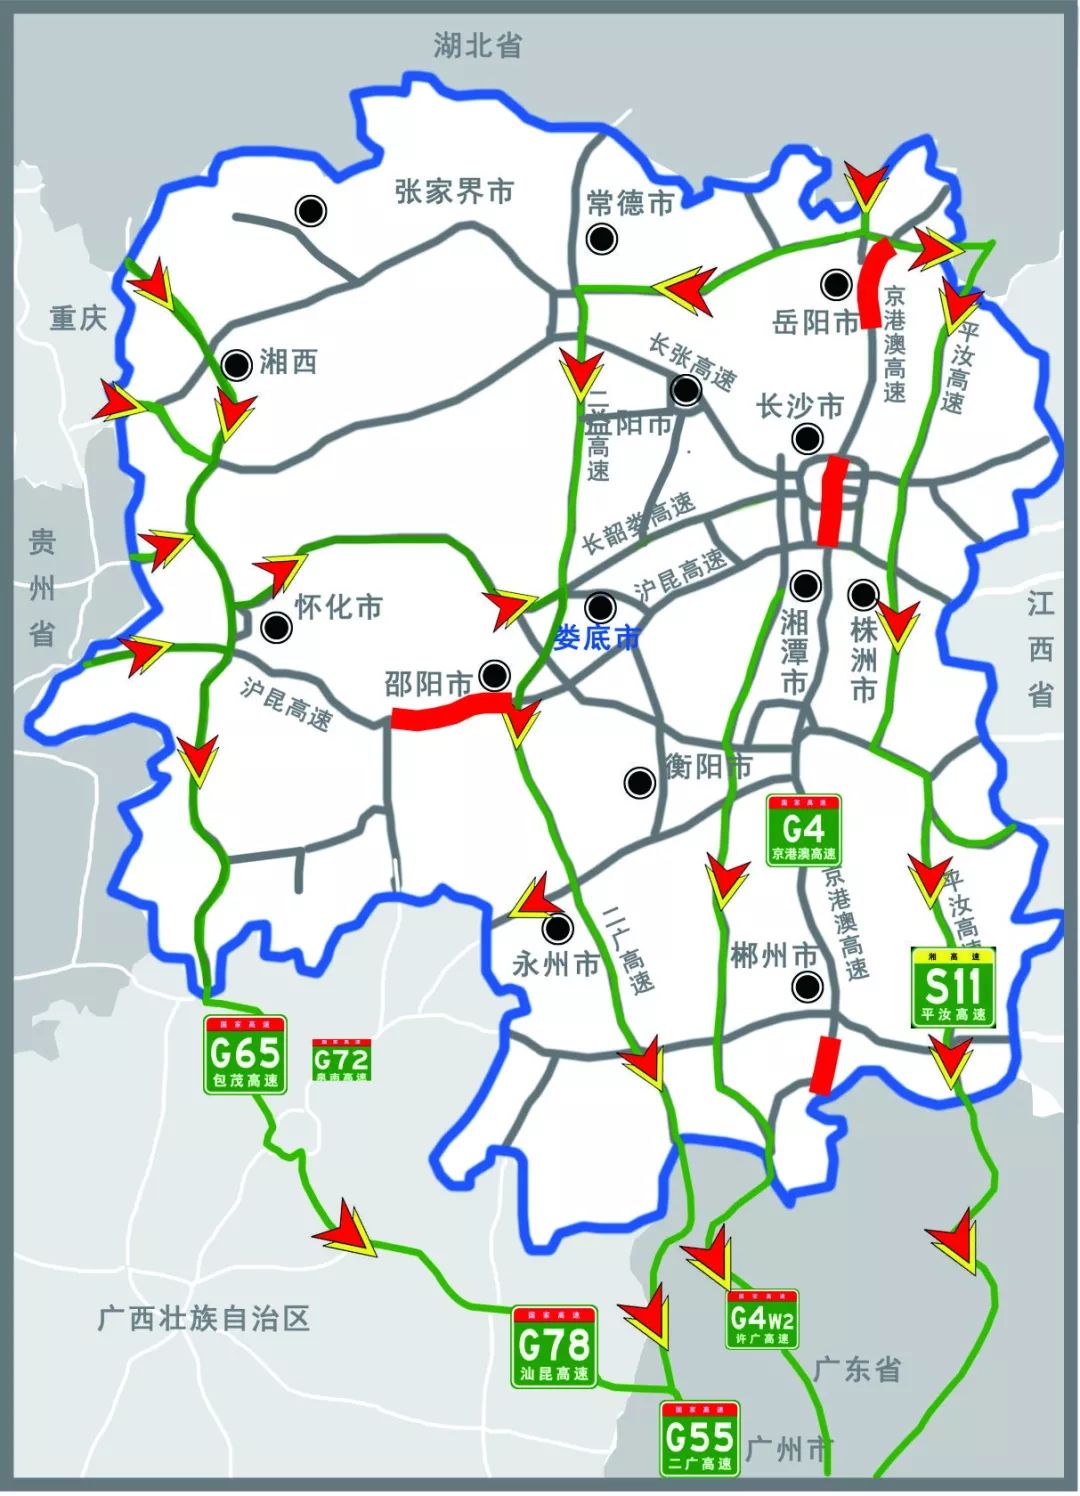 扩散|春节后(19日至21日)湖南高速重点路段将实施交通高峰应急分流